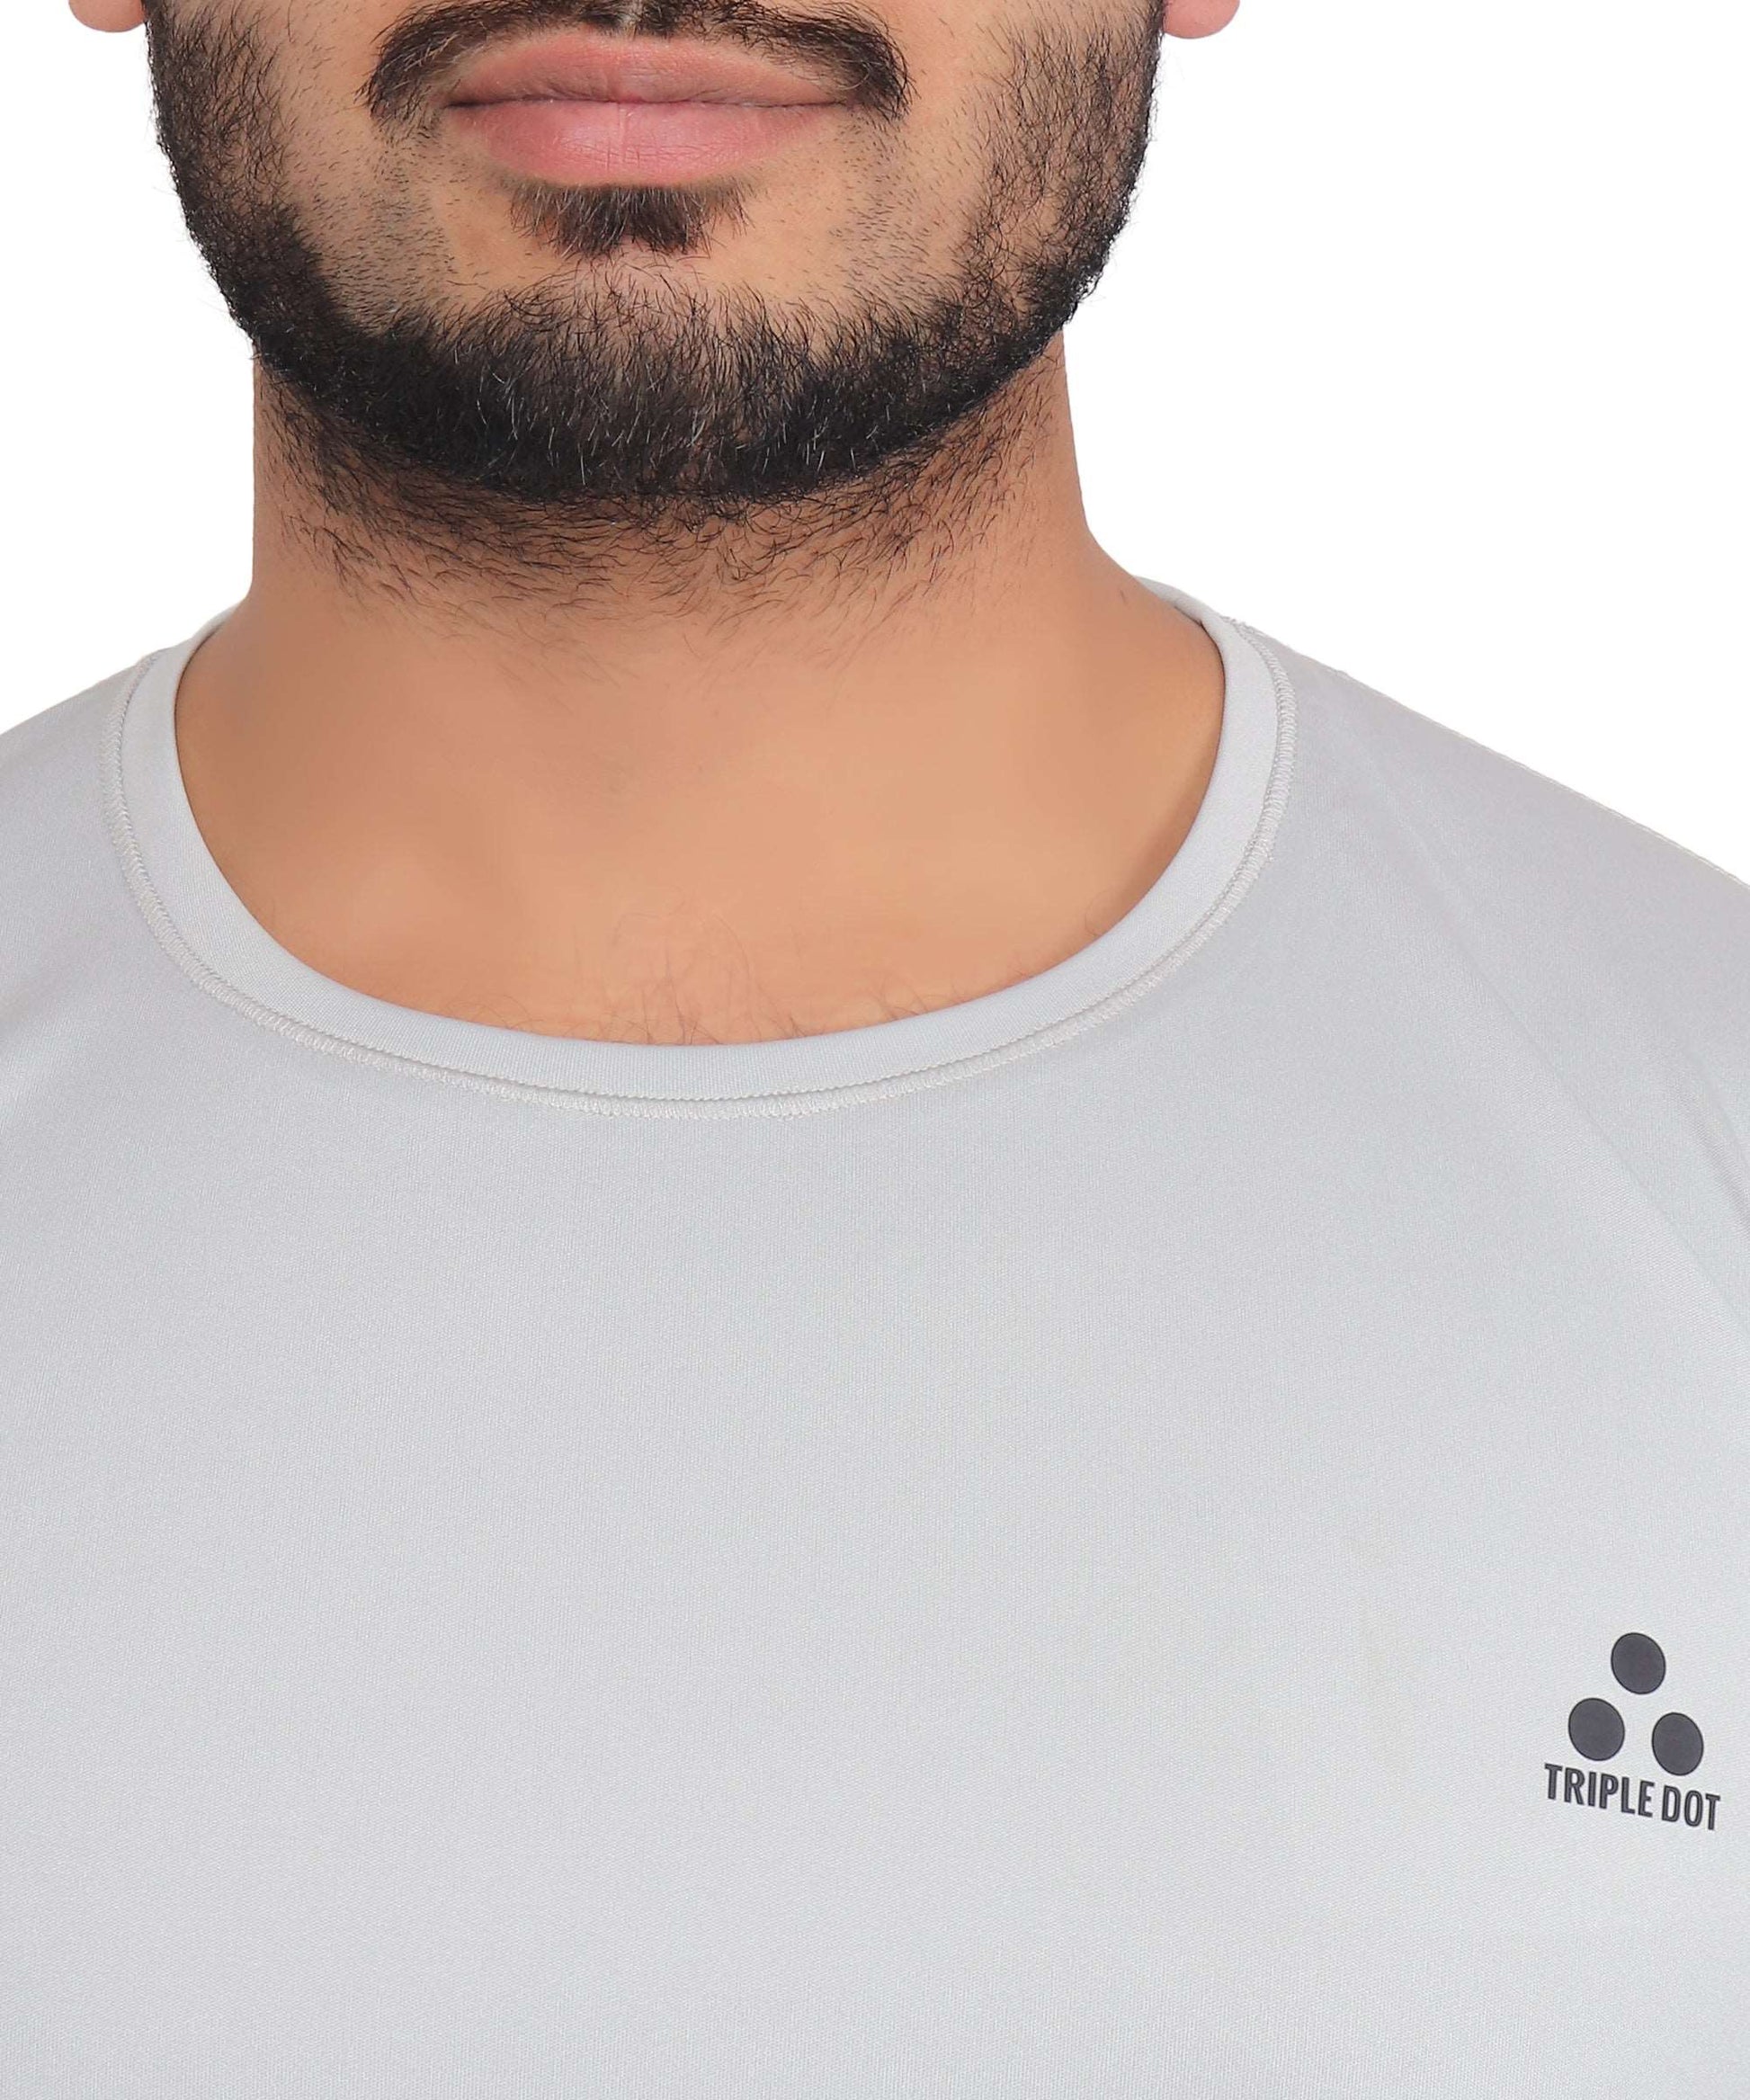 Triple Dot Light Grey Polyester Round Neck Sport T shirt for Men